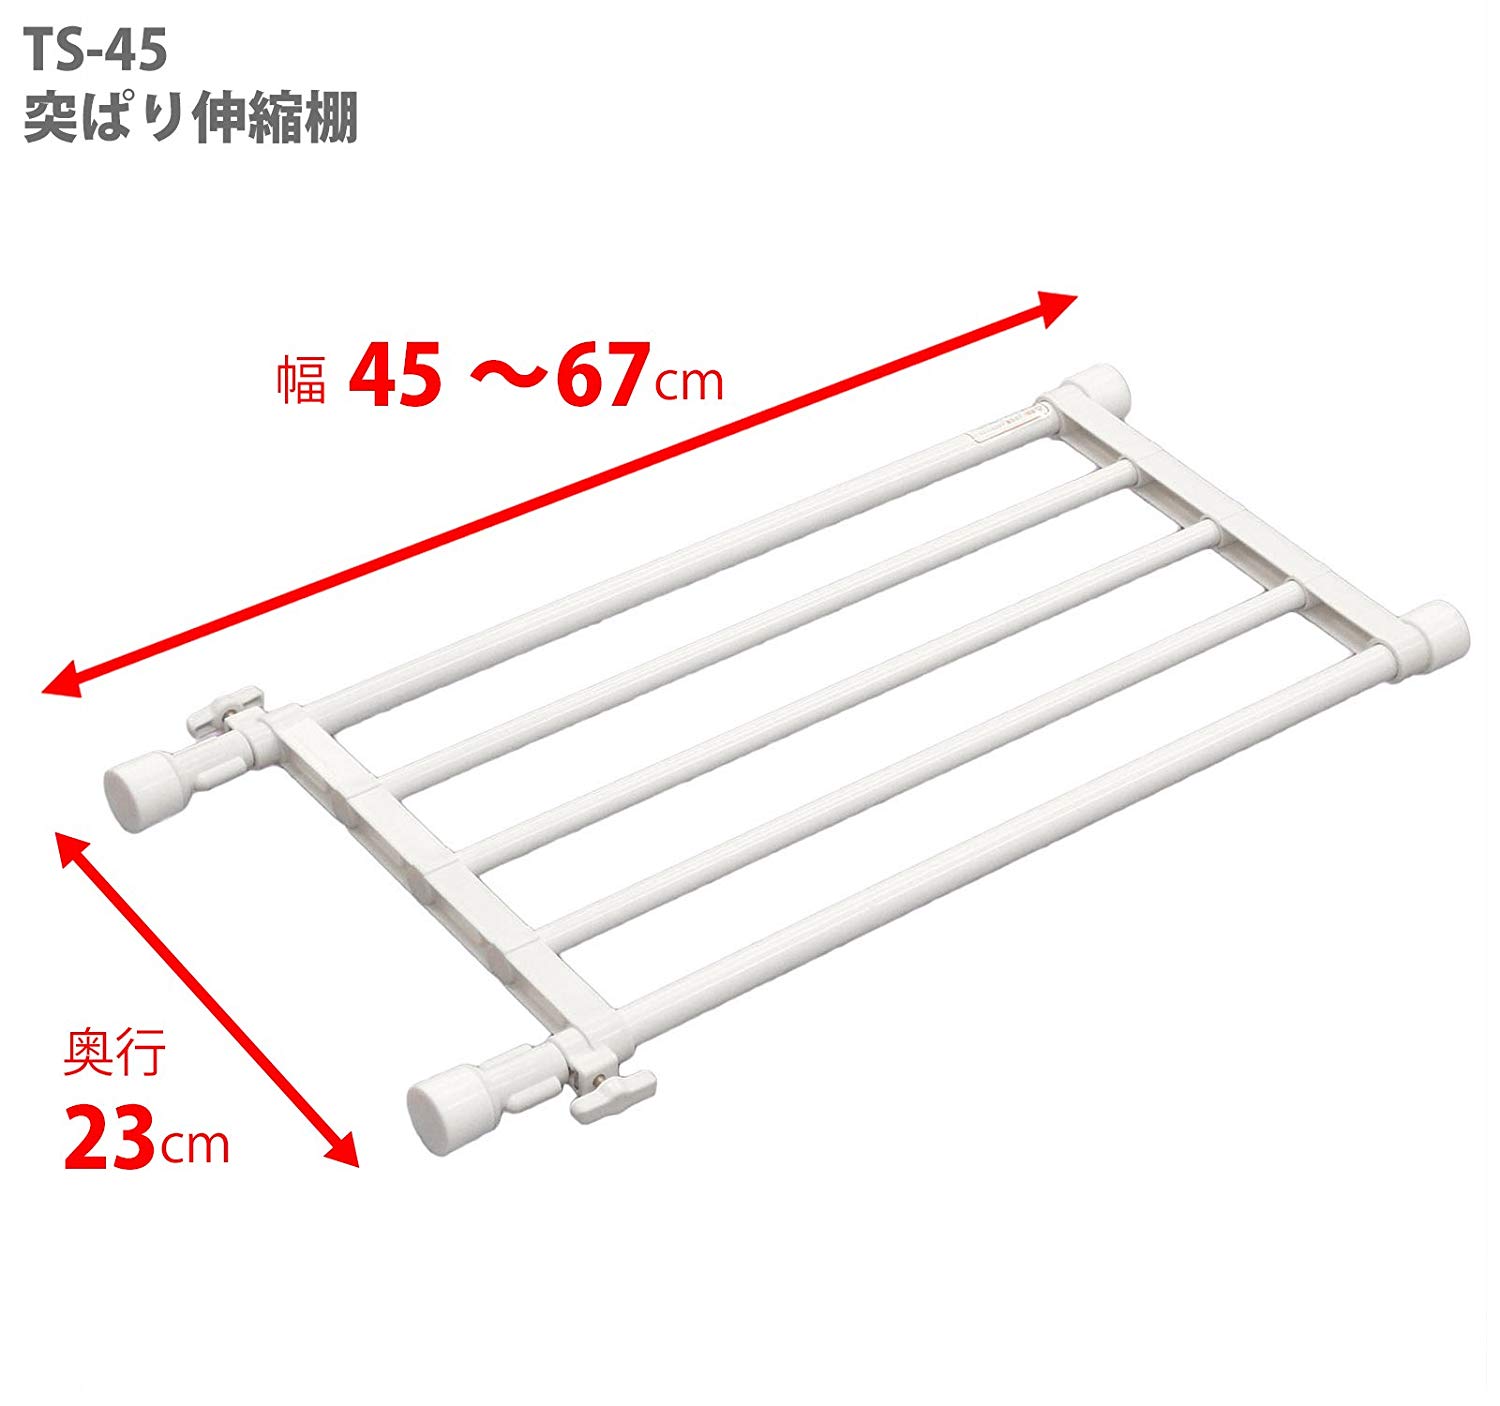 Kệ chia ngăn không cần khoan vít Heian, 45cm kéo dài 67cm (M3)